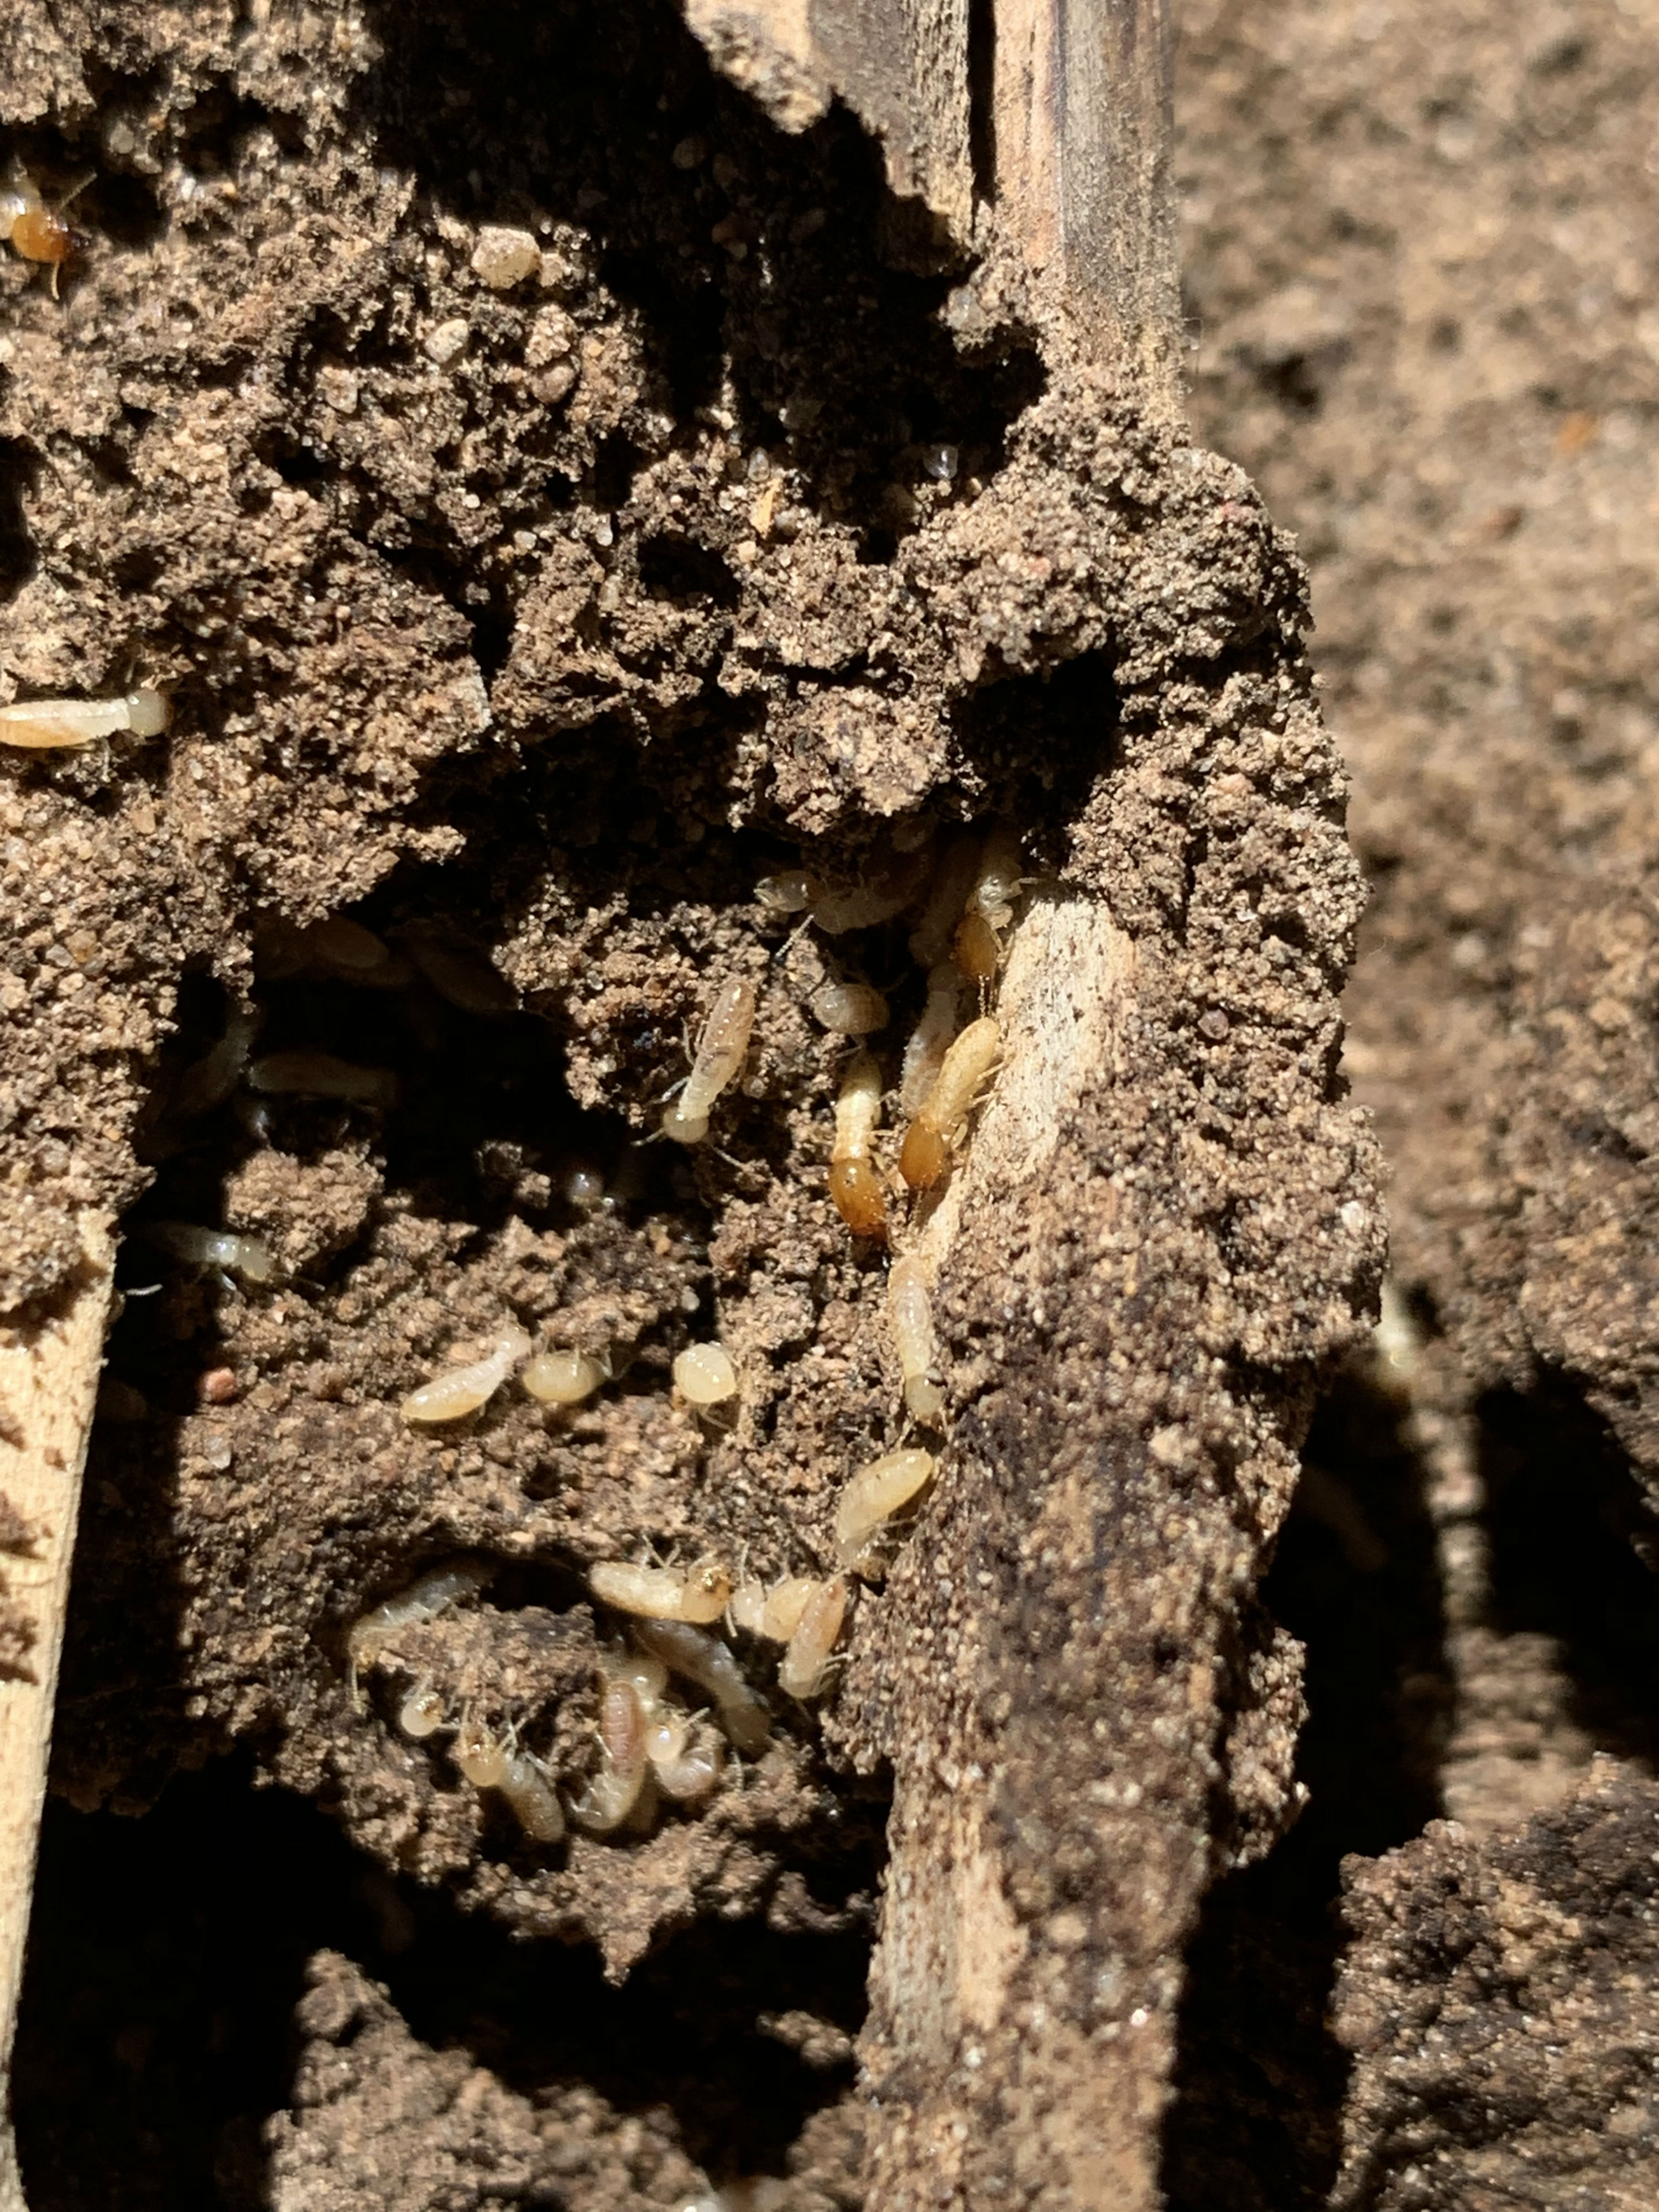 Live Termites